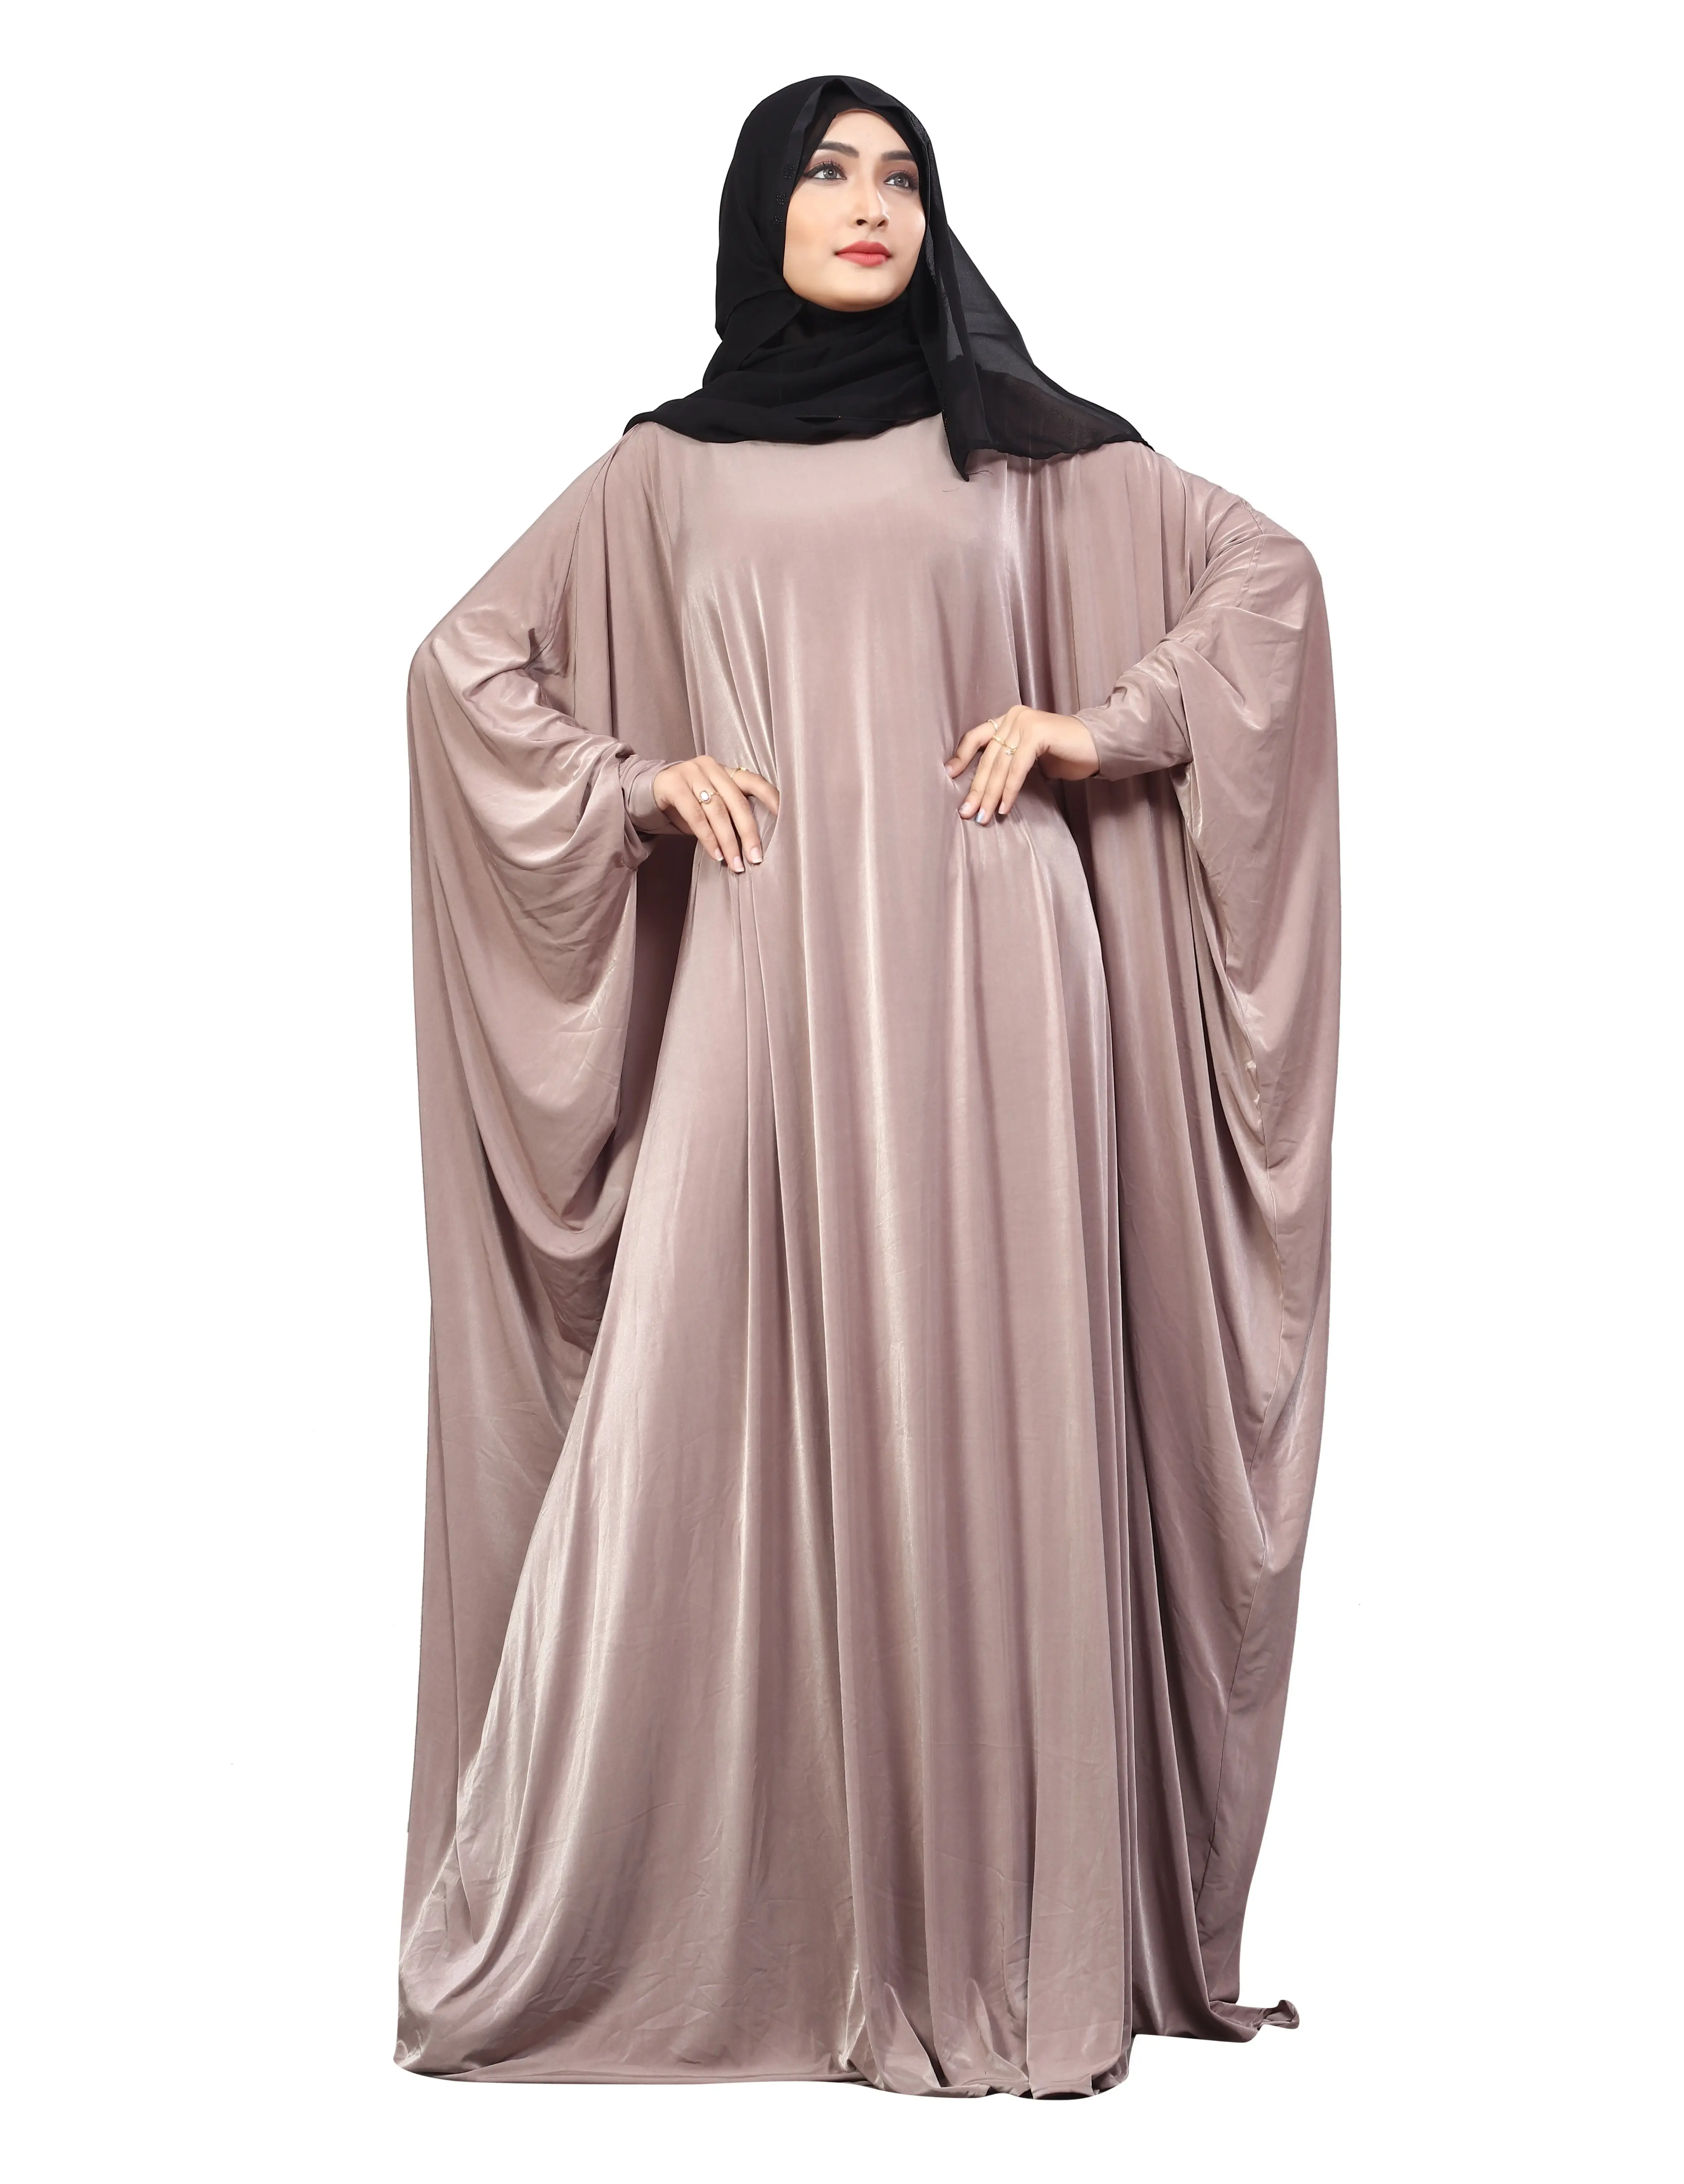 אור סגול צבע רגיל משלוח גודל ערבית Lykra העבאיה עם שיפון חיג 'אב צעיף לנשים